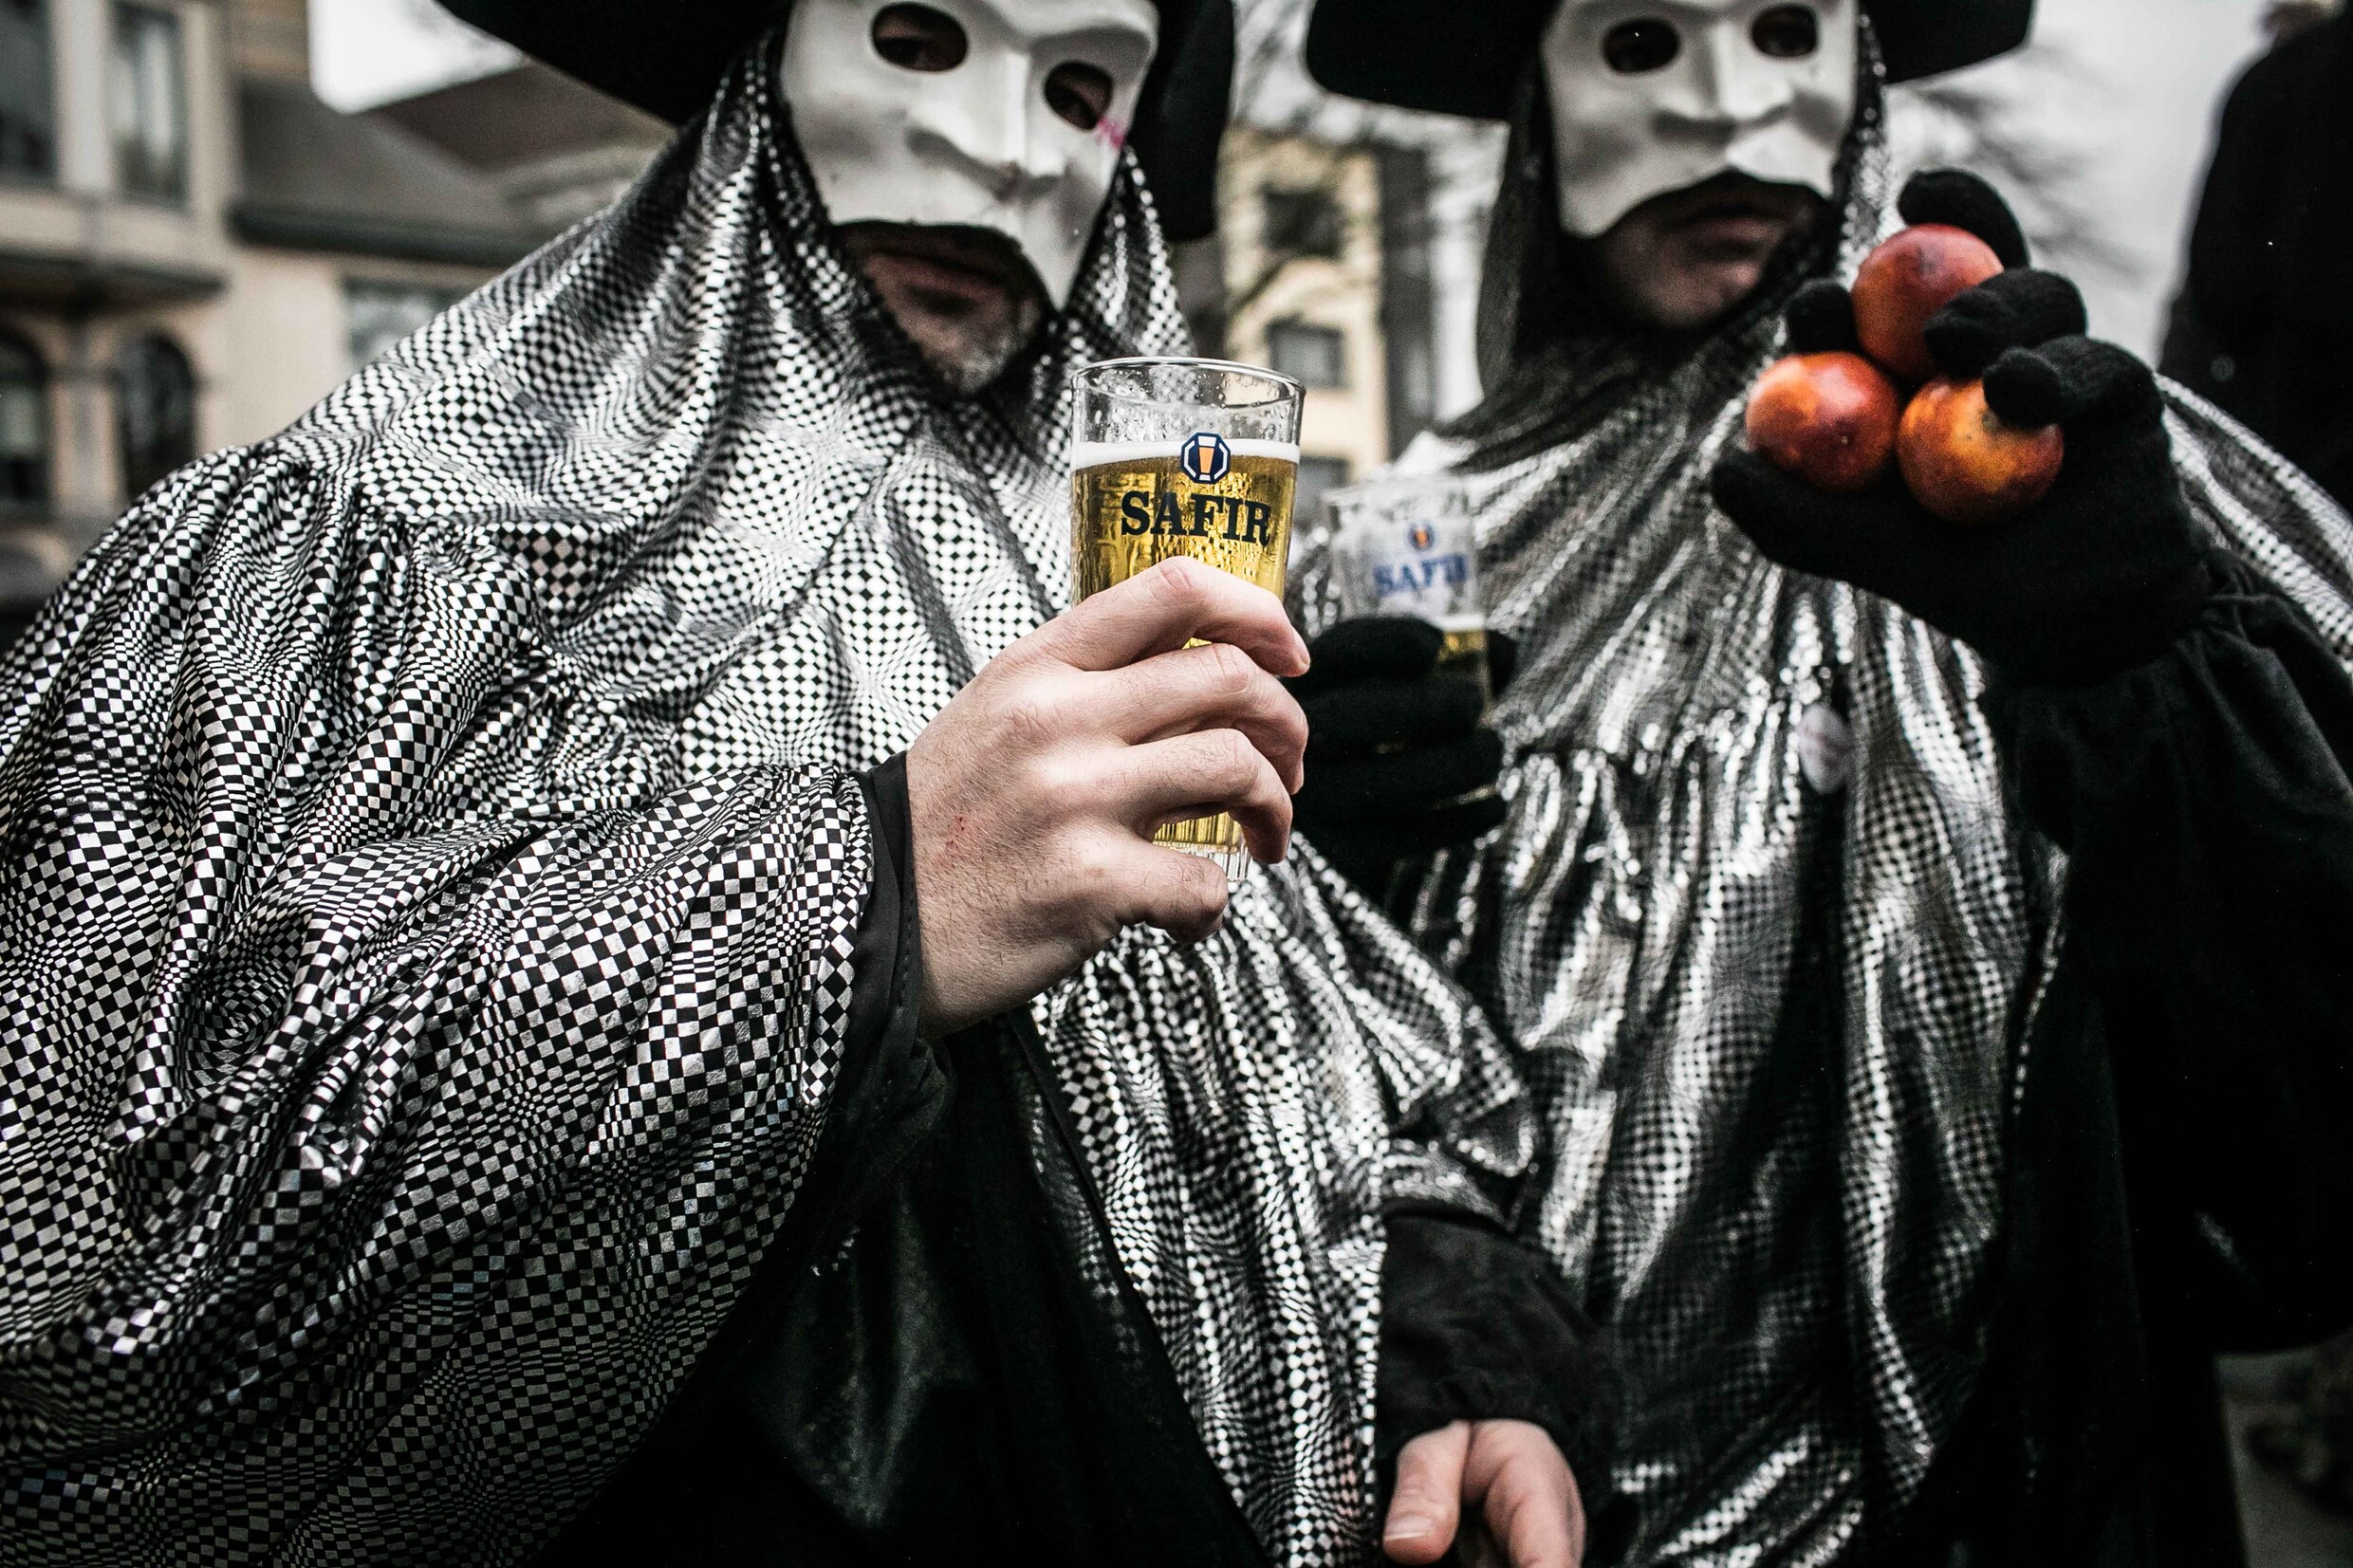 In beeld: De Morgen-fotograaf Bas Bogaerts legt Aalst Carnaval vast